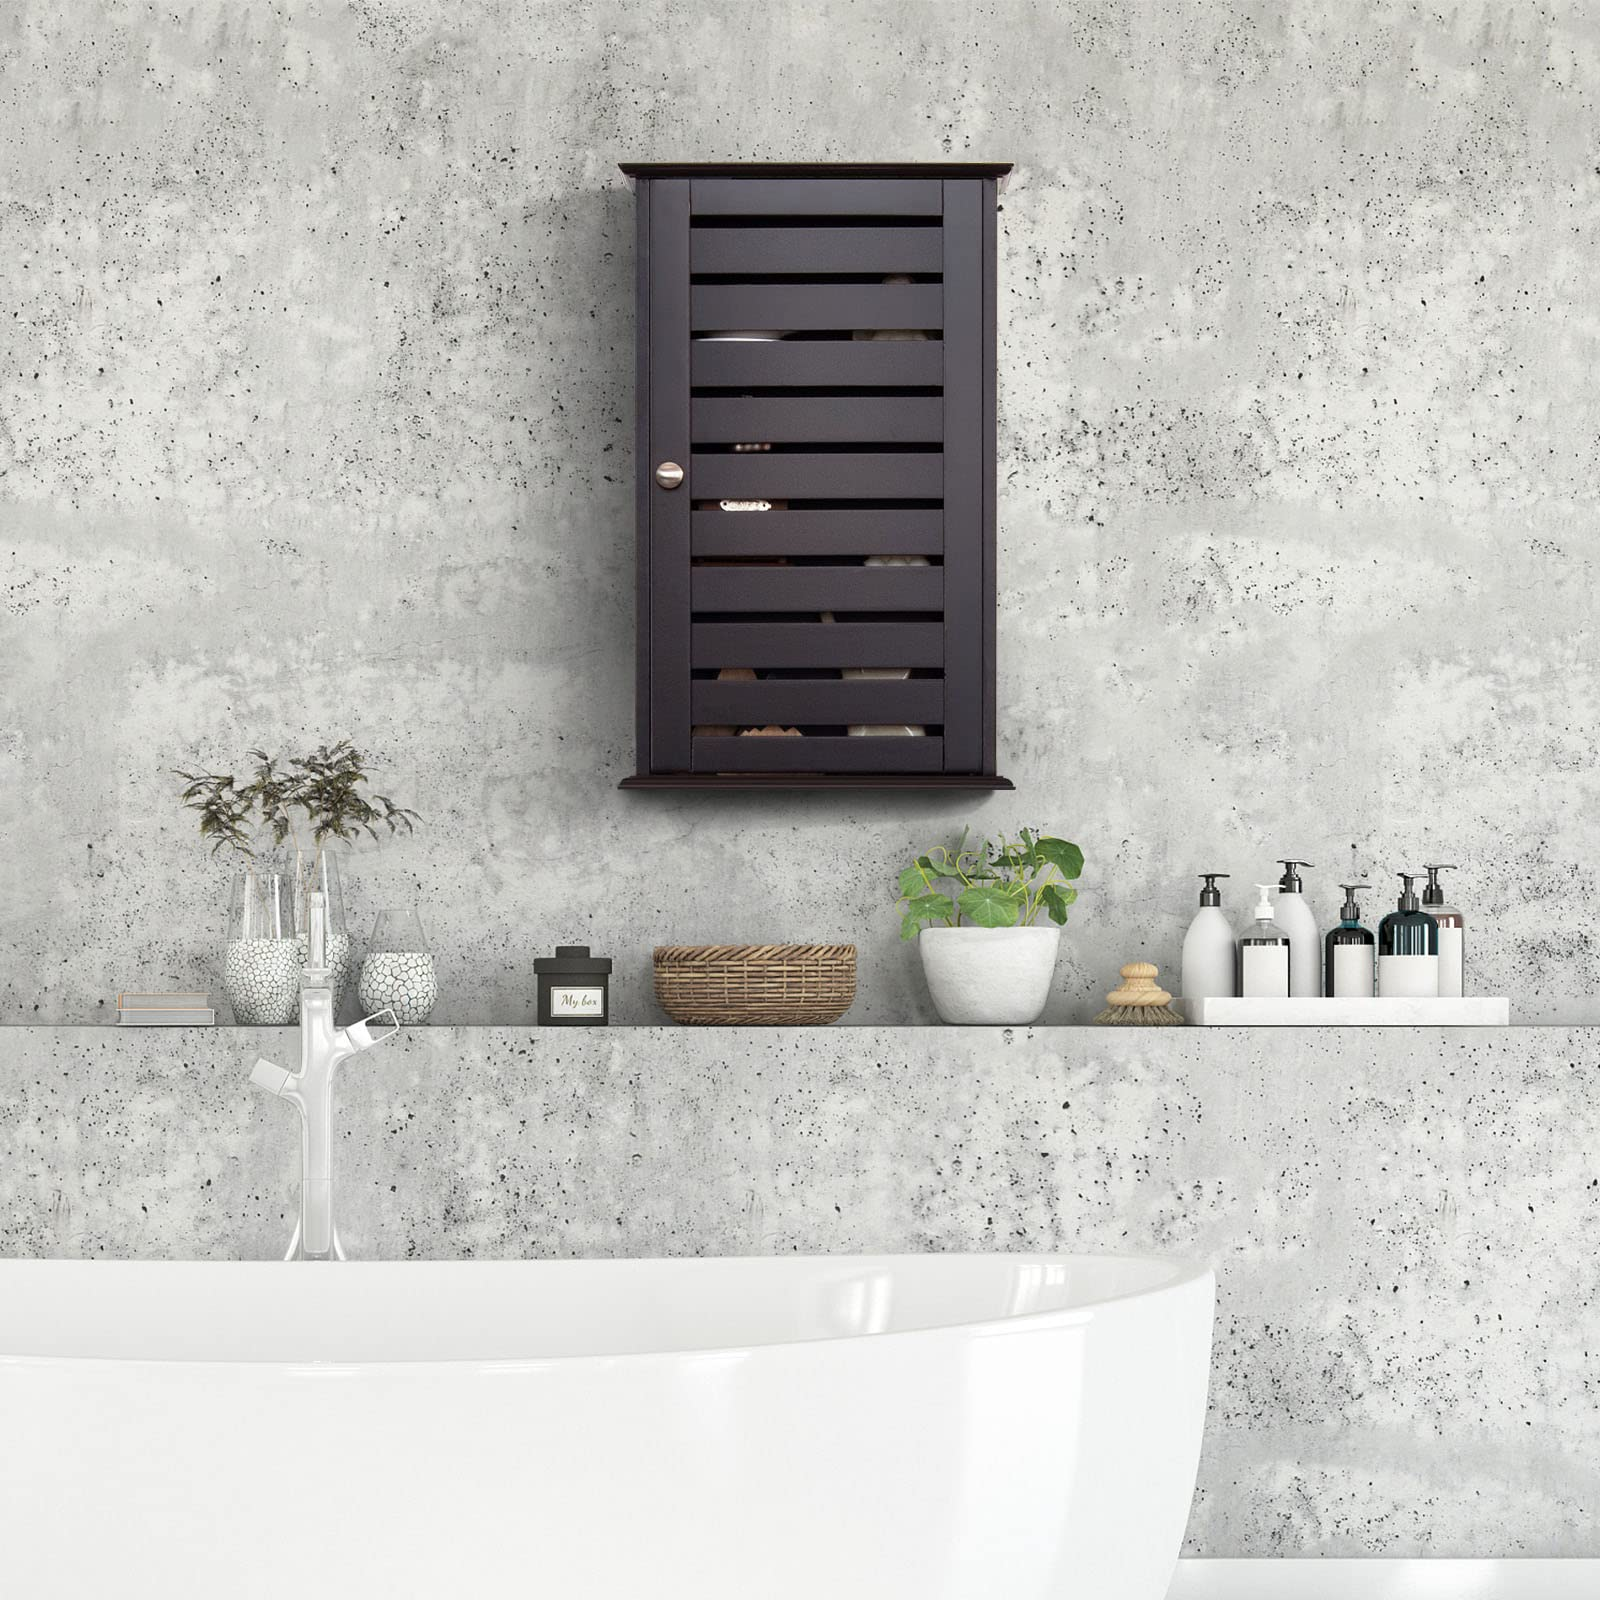 Giantex Bathroom Wall Cabinet